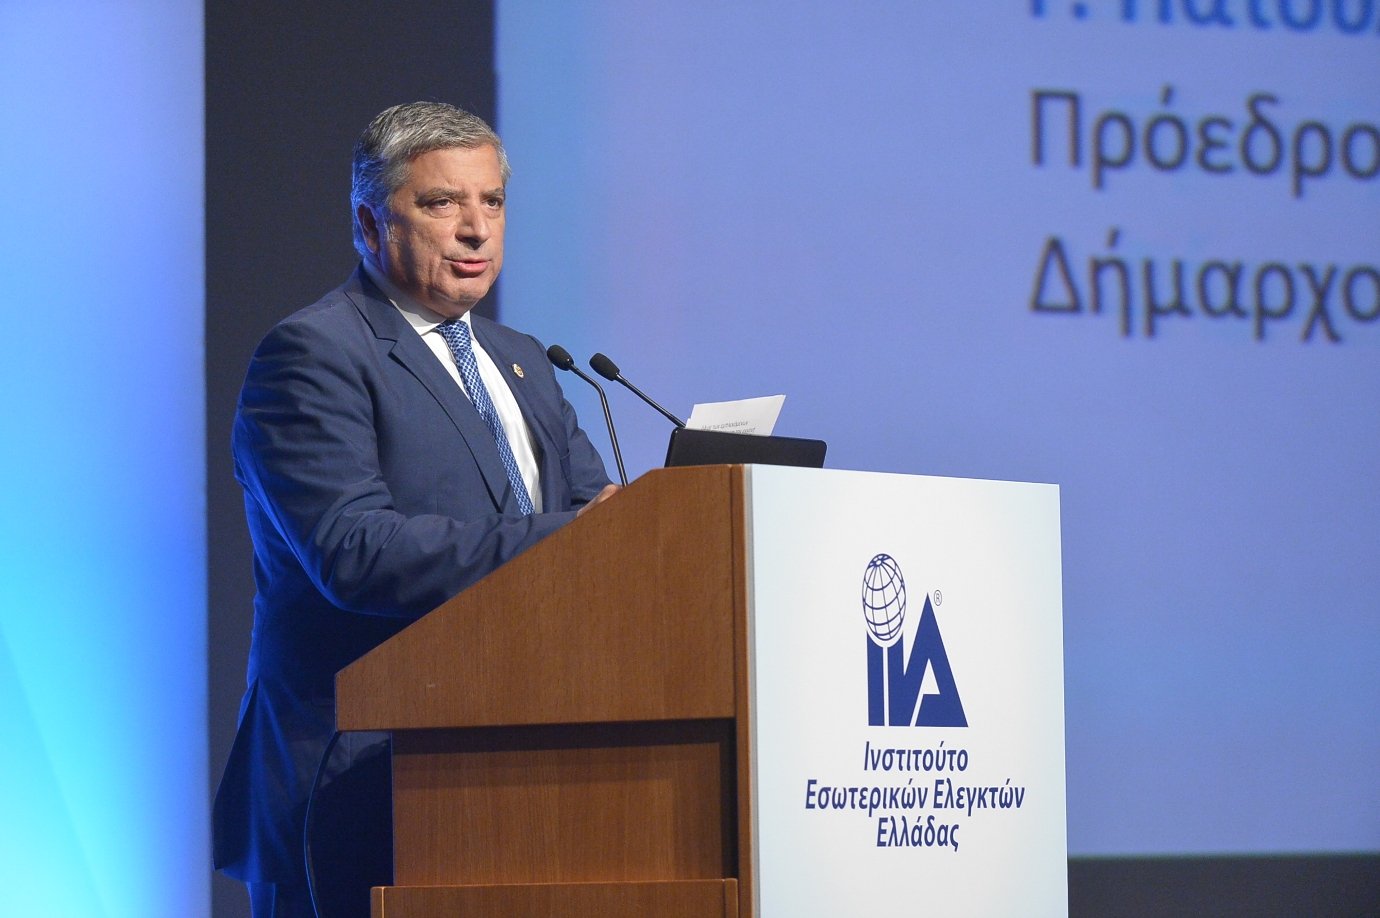 Πατούλης: Η Περιφέρεια Αττικής θα στηρίξει κάθε προσπάθεια που αναβαθμίζει την ποιότητα ζωής των κατοίκων της Αθήνας